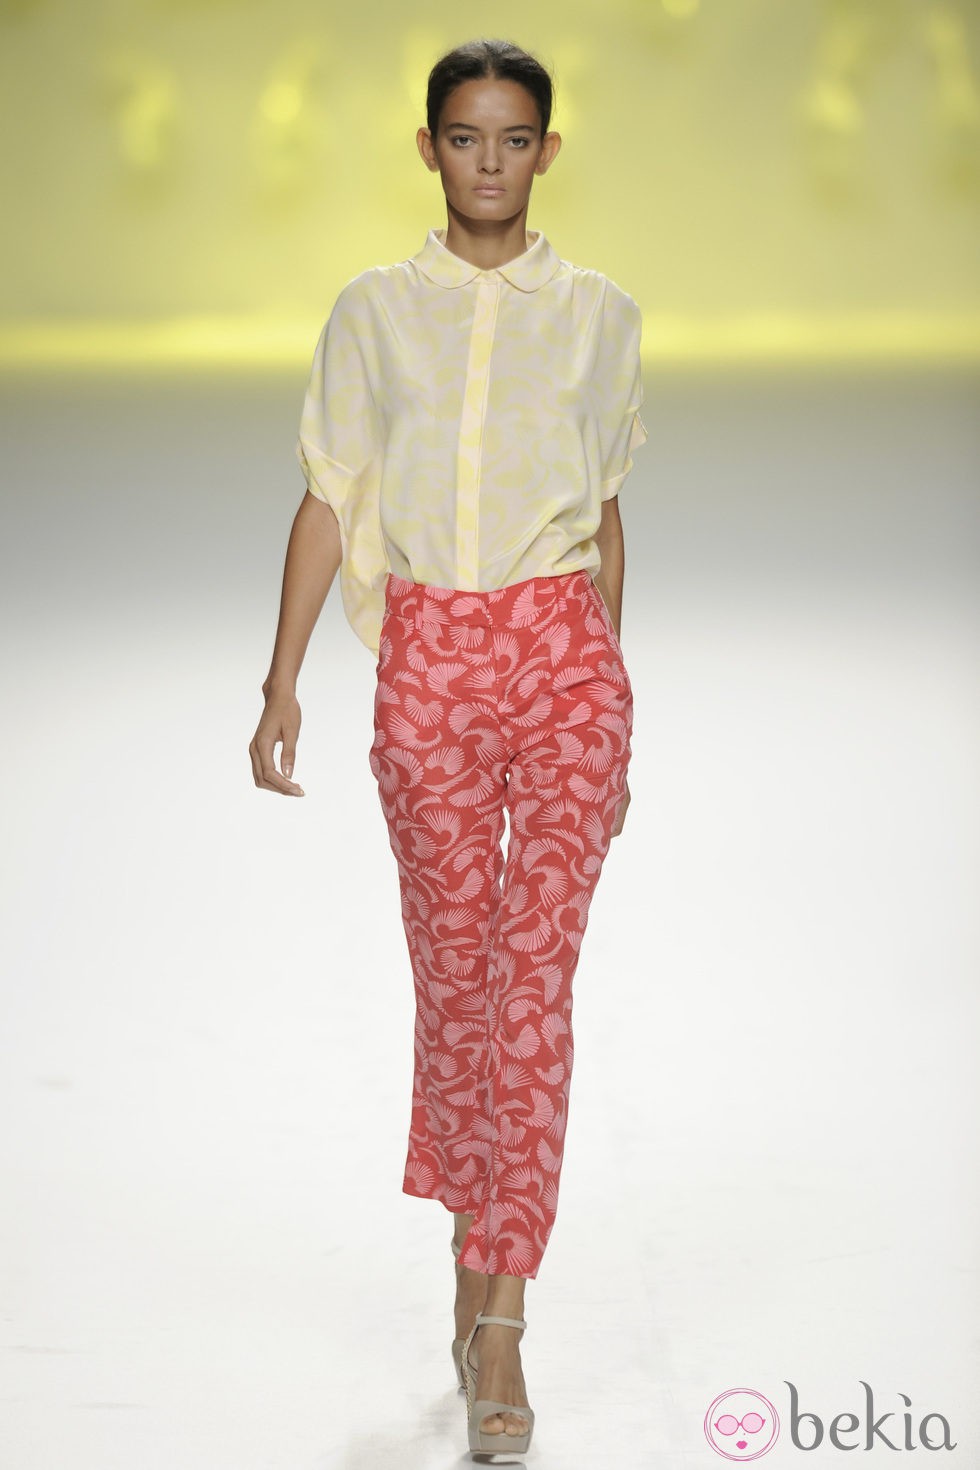 Pantalón pesquero rosa y rojo con blusa amarilla de la colección primavera/verano 2013 de Sita Murt